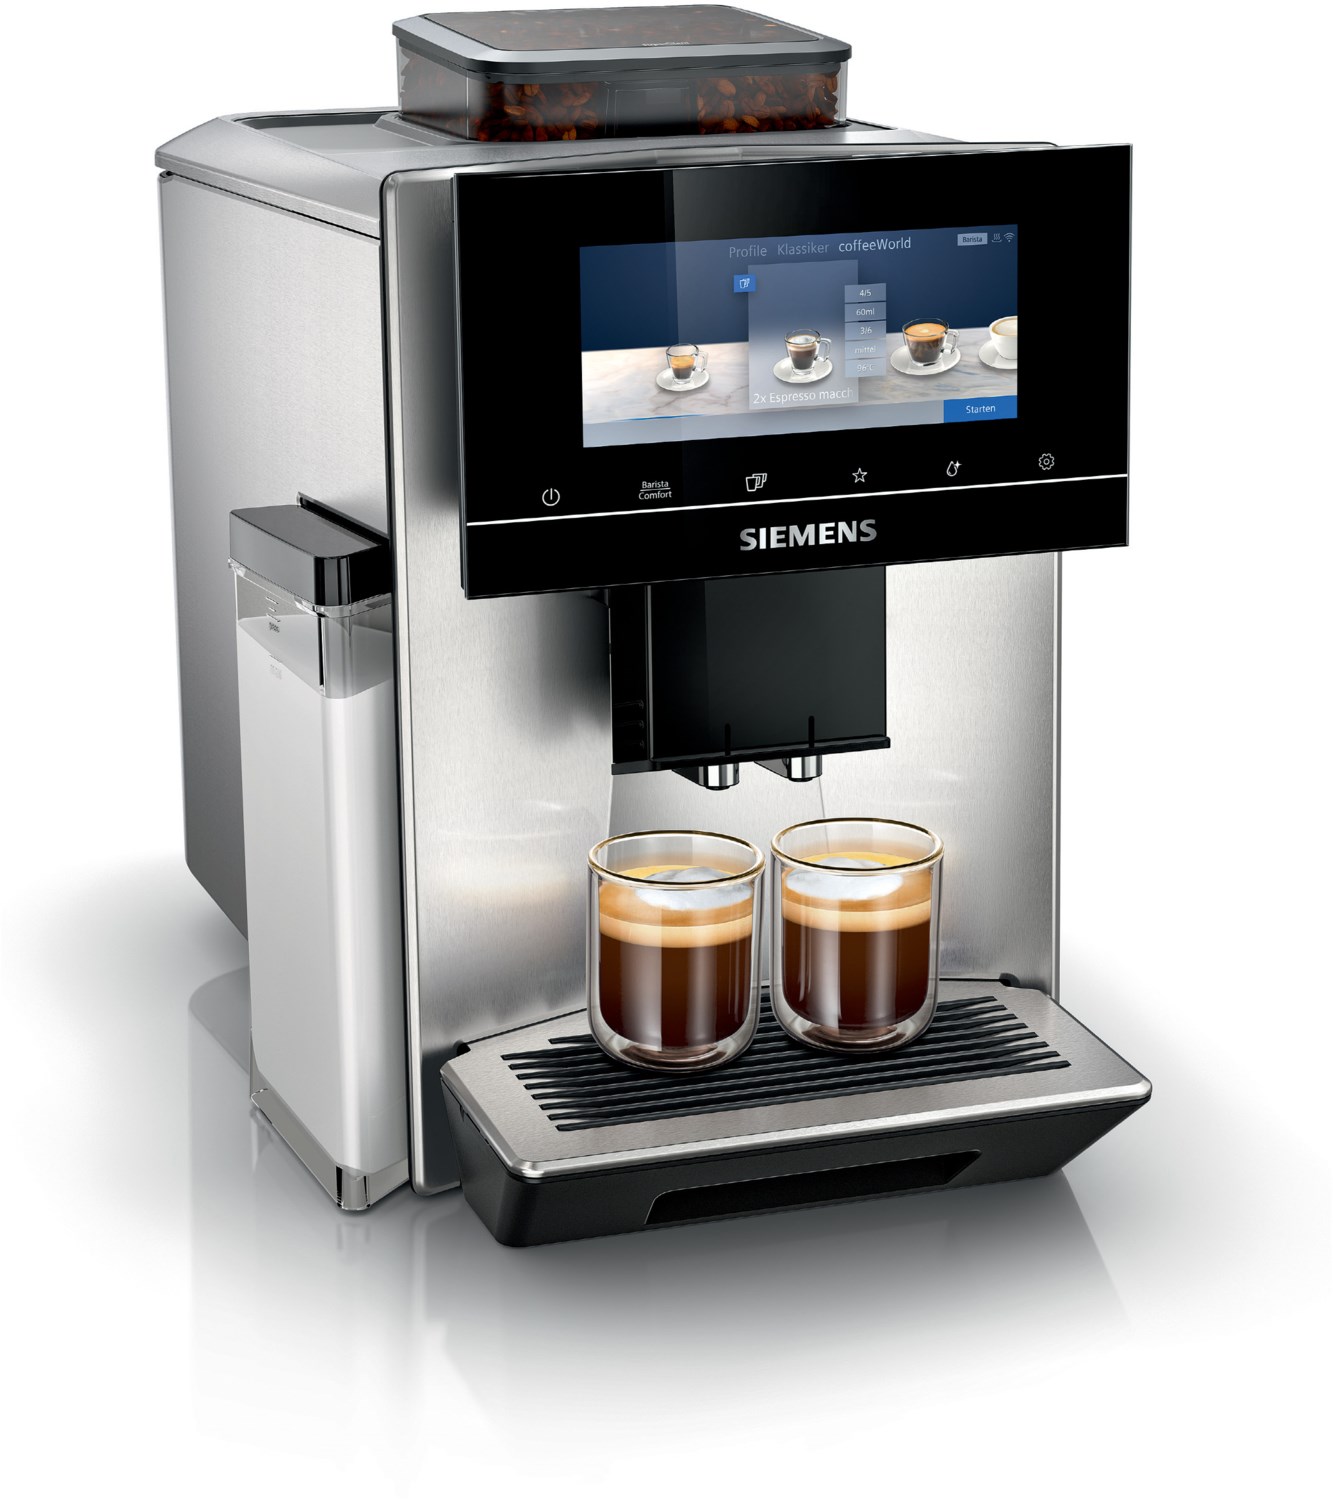 TQ903D03 Kaffee-Vollautomat edelstahl von Siemens